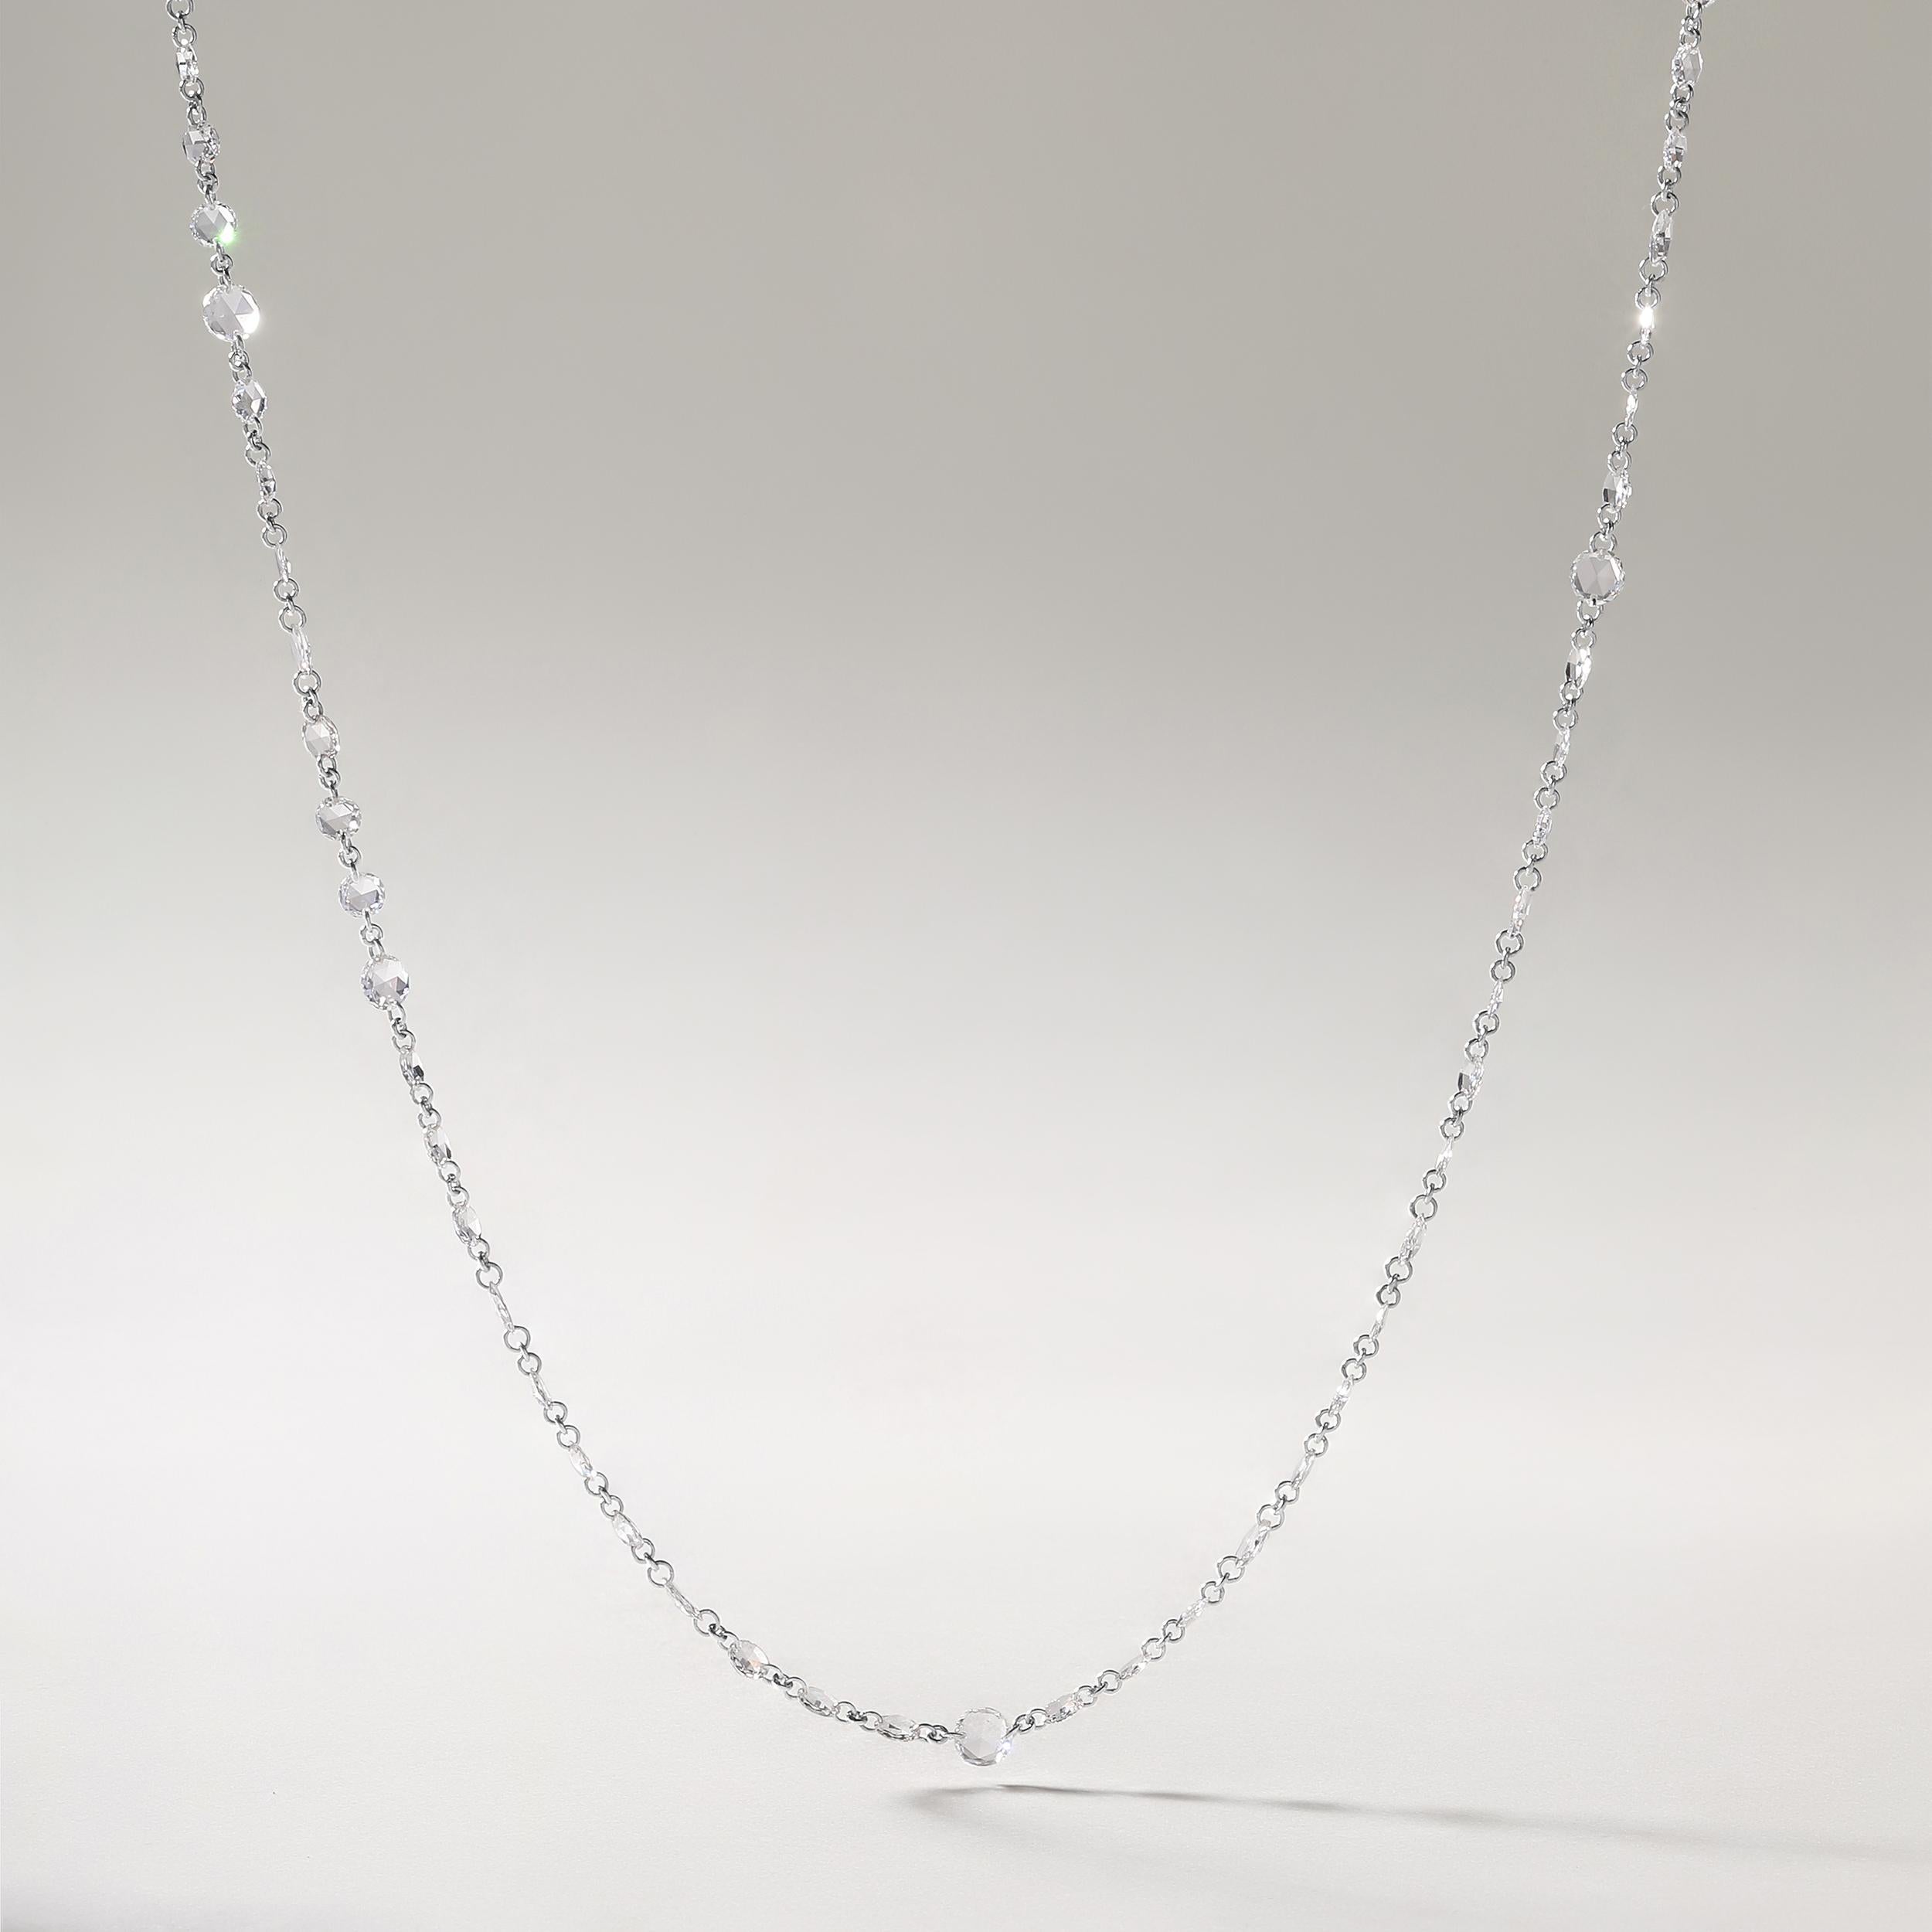 Die Halskette besteht aus 2,6 Gramm 18-karätigem Weißgold und enthält 87 natürliche Diamanten im Rosenschliff mit einem Gesamtgewicht von 4,96 Karat in den Farben E-F und VVS-VS. Die Länge der Halskette beträgt 18 Zoll.

ZEITGENÖSSISCHE UND ZEITLOSE